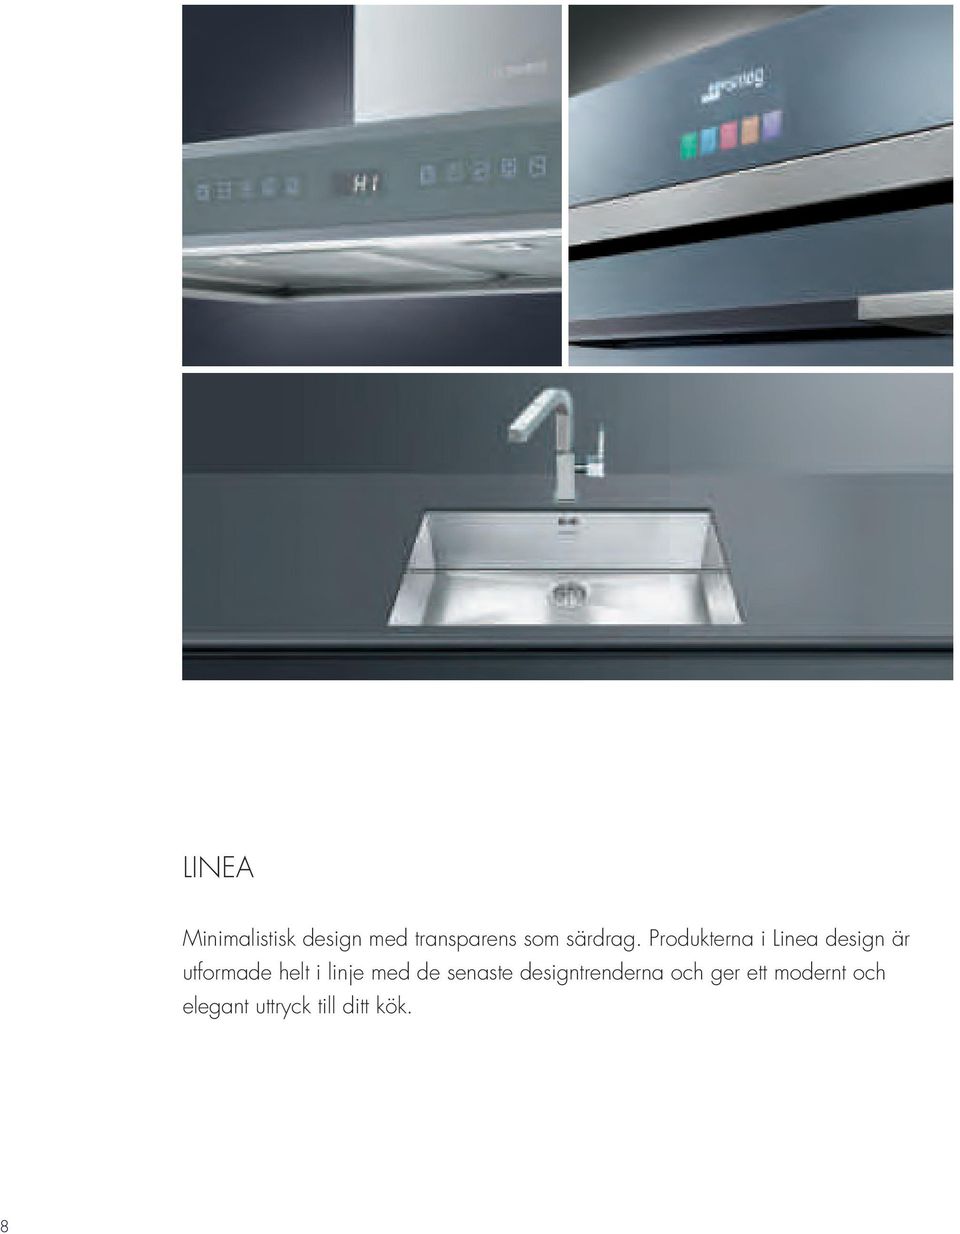 Produkterna i Linea design är utformade helt i